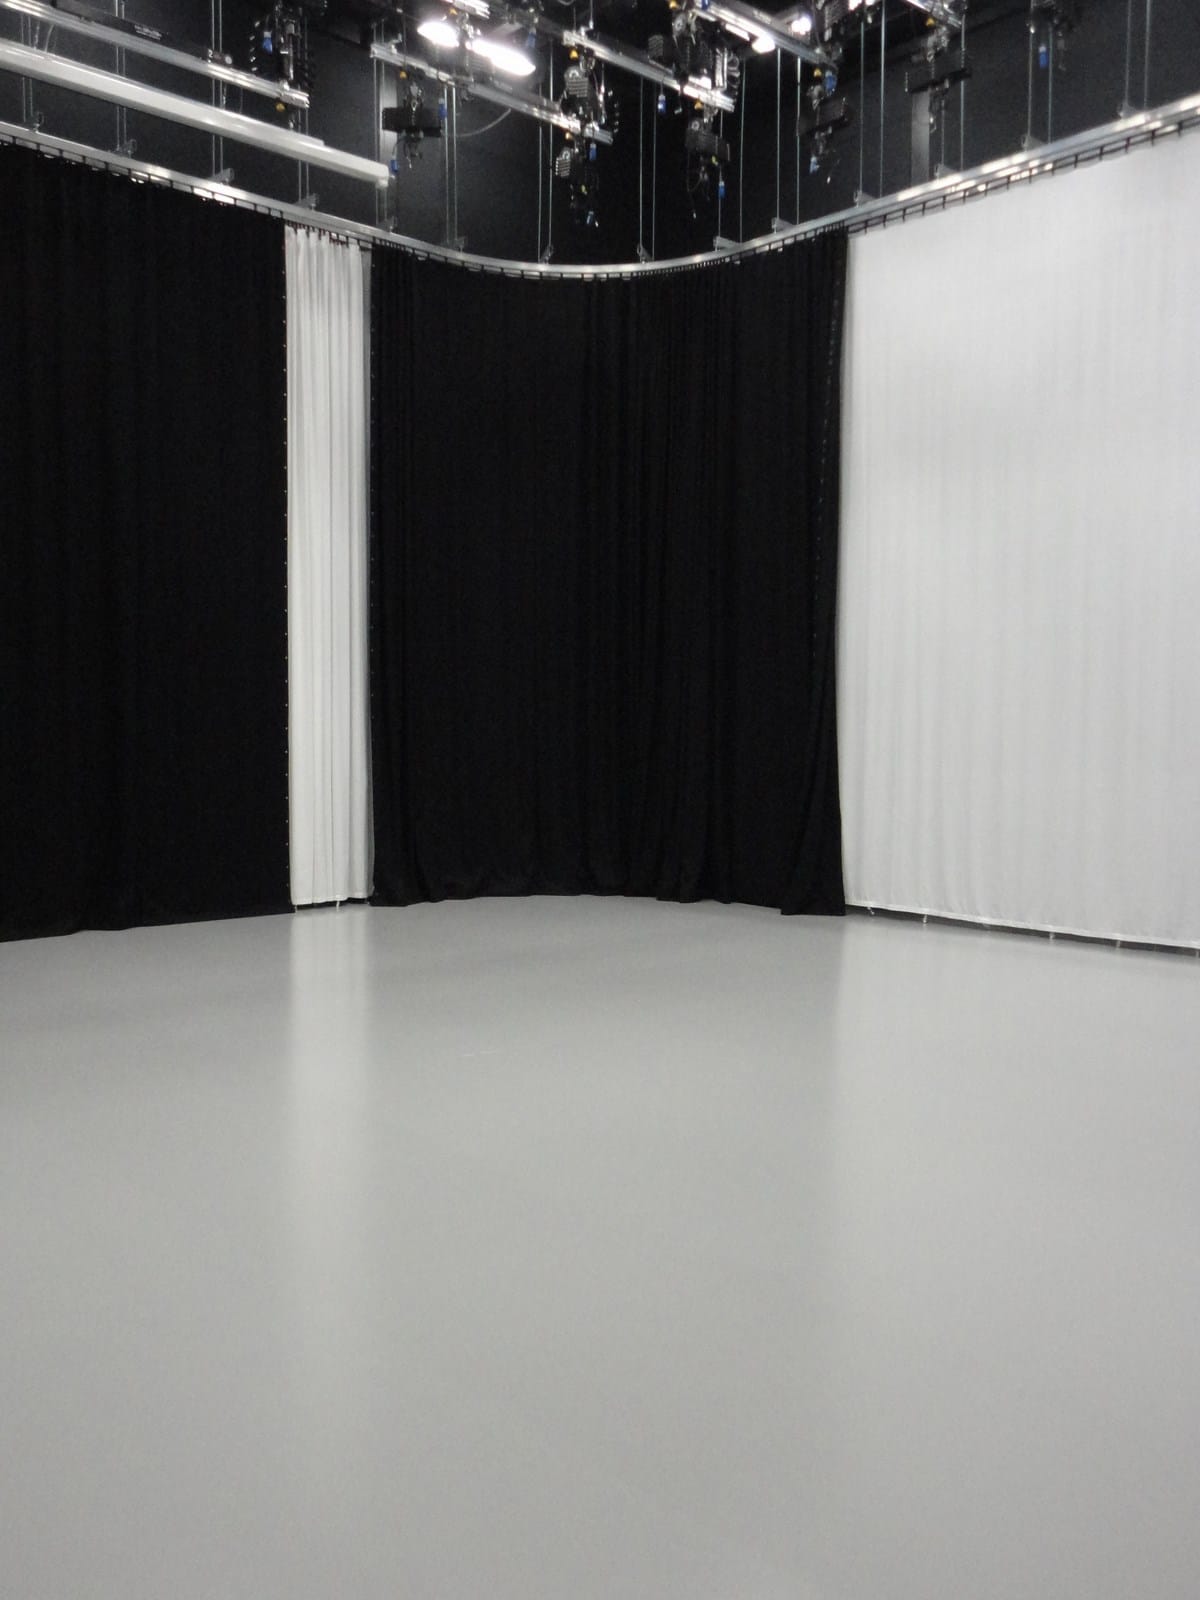 IADT TV Studio Floor 6